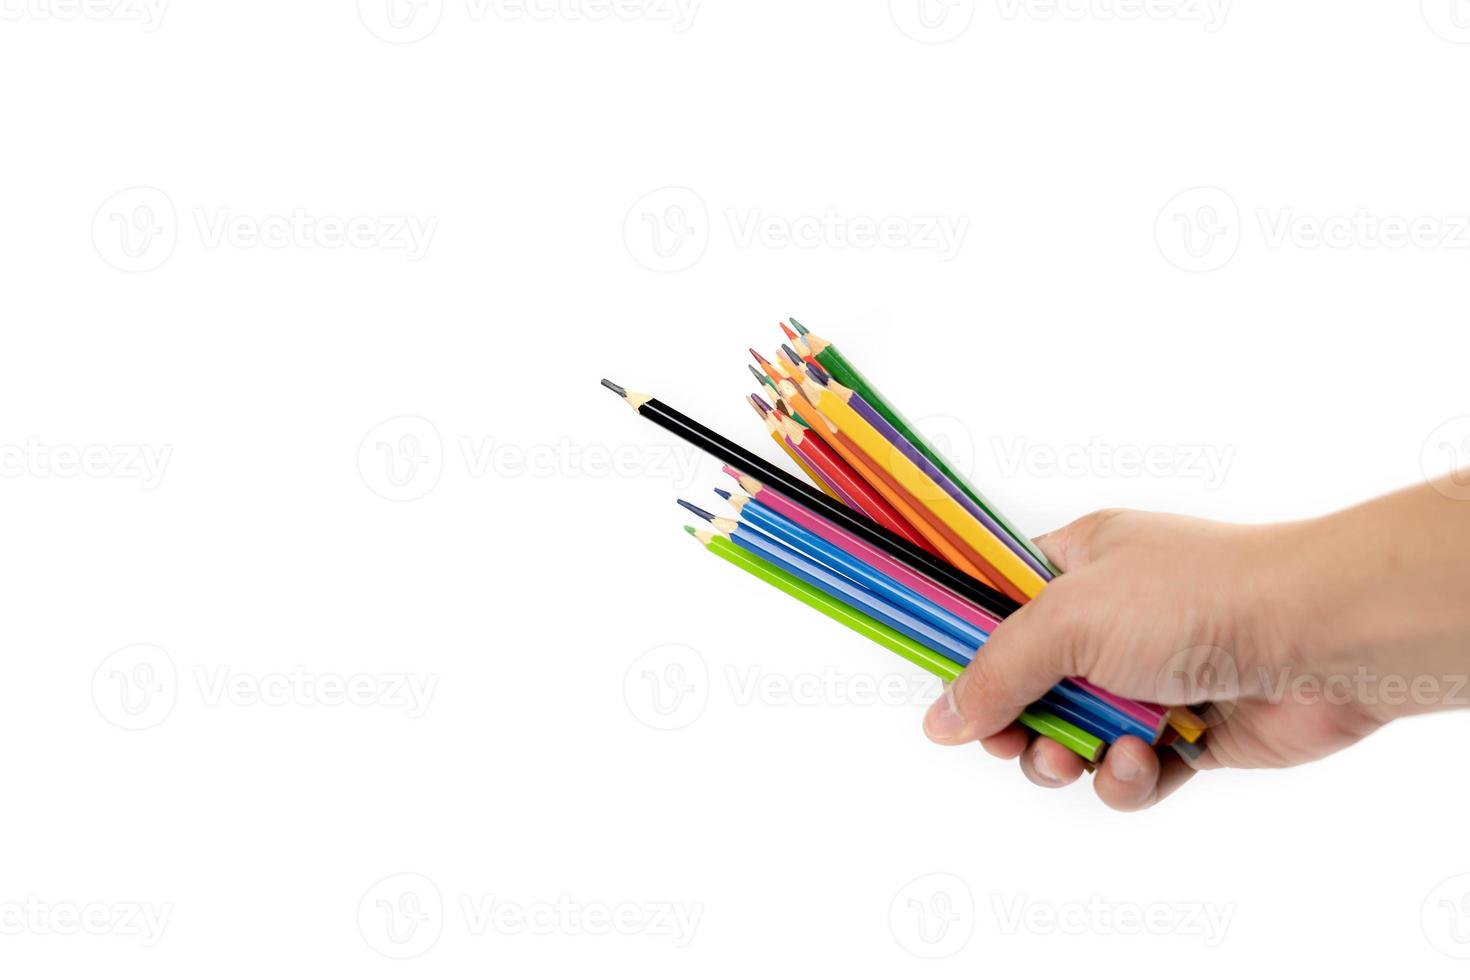 la mano de un hombre asiático sostiene muchos lápices de colores en la mano, encabezados por un lápiz de color negro sobre el fondo blanco. camino de recortes foto